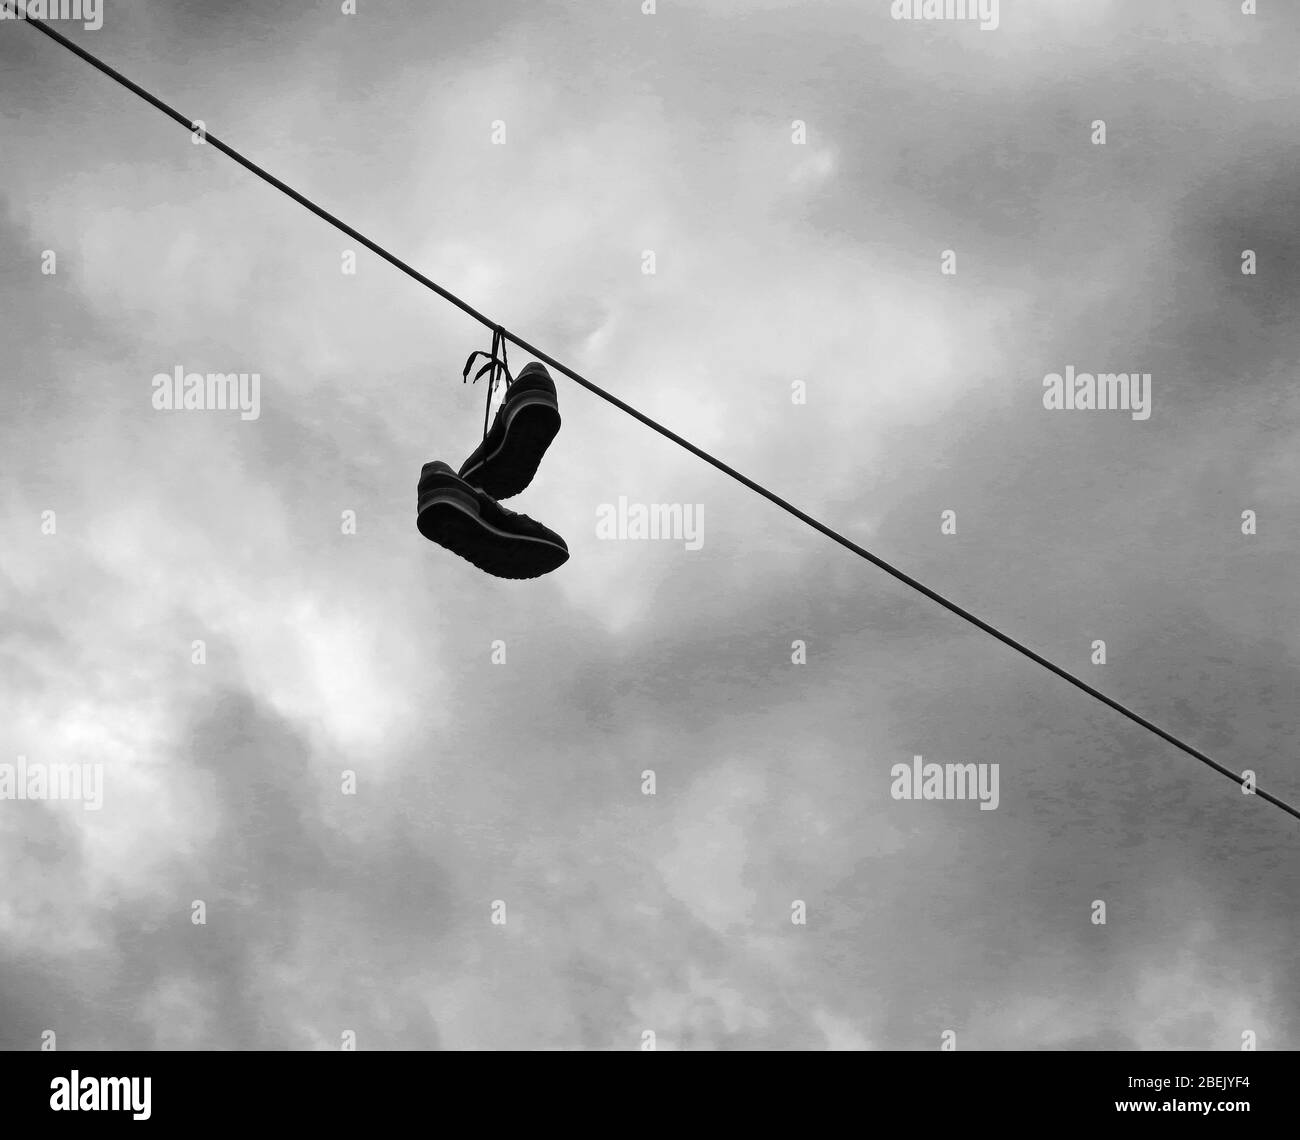 Ein Paar Schuhe, die zusammengebunden sind, auf eine Stromleitung geworfen als Streich an jemanden. Konzept: Minimalismus in der Fotografie. Stockfoto